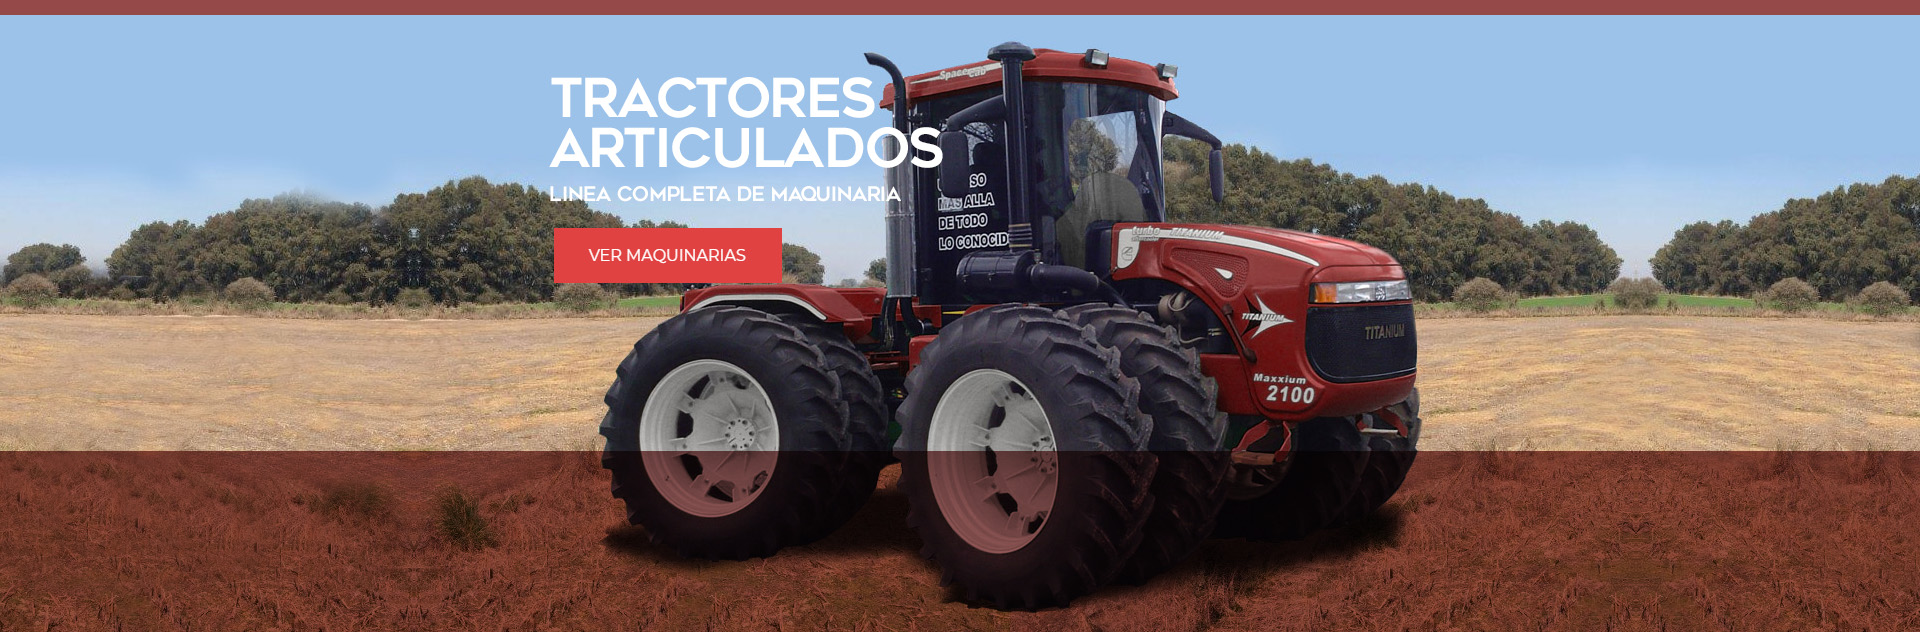 Tractores Articulados Abati Titanium Argentina Maquinaria Agricola